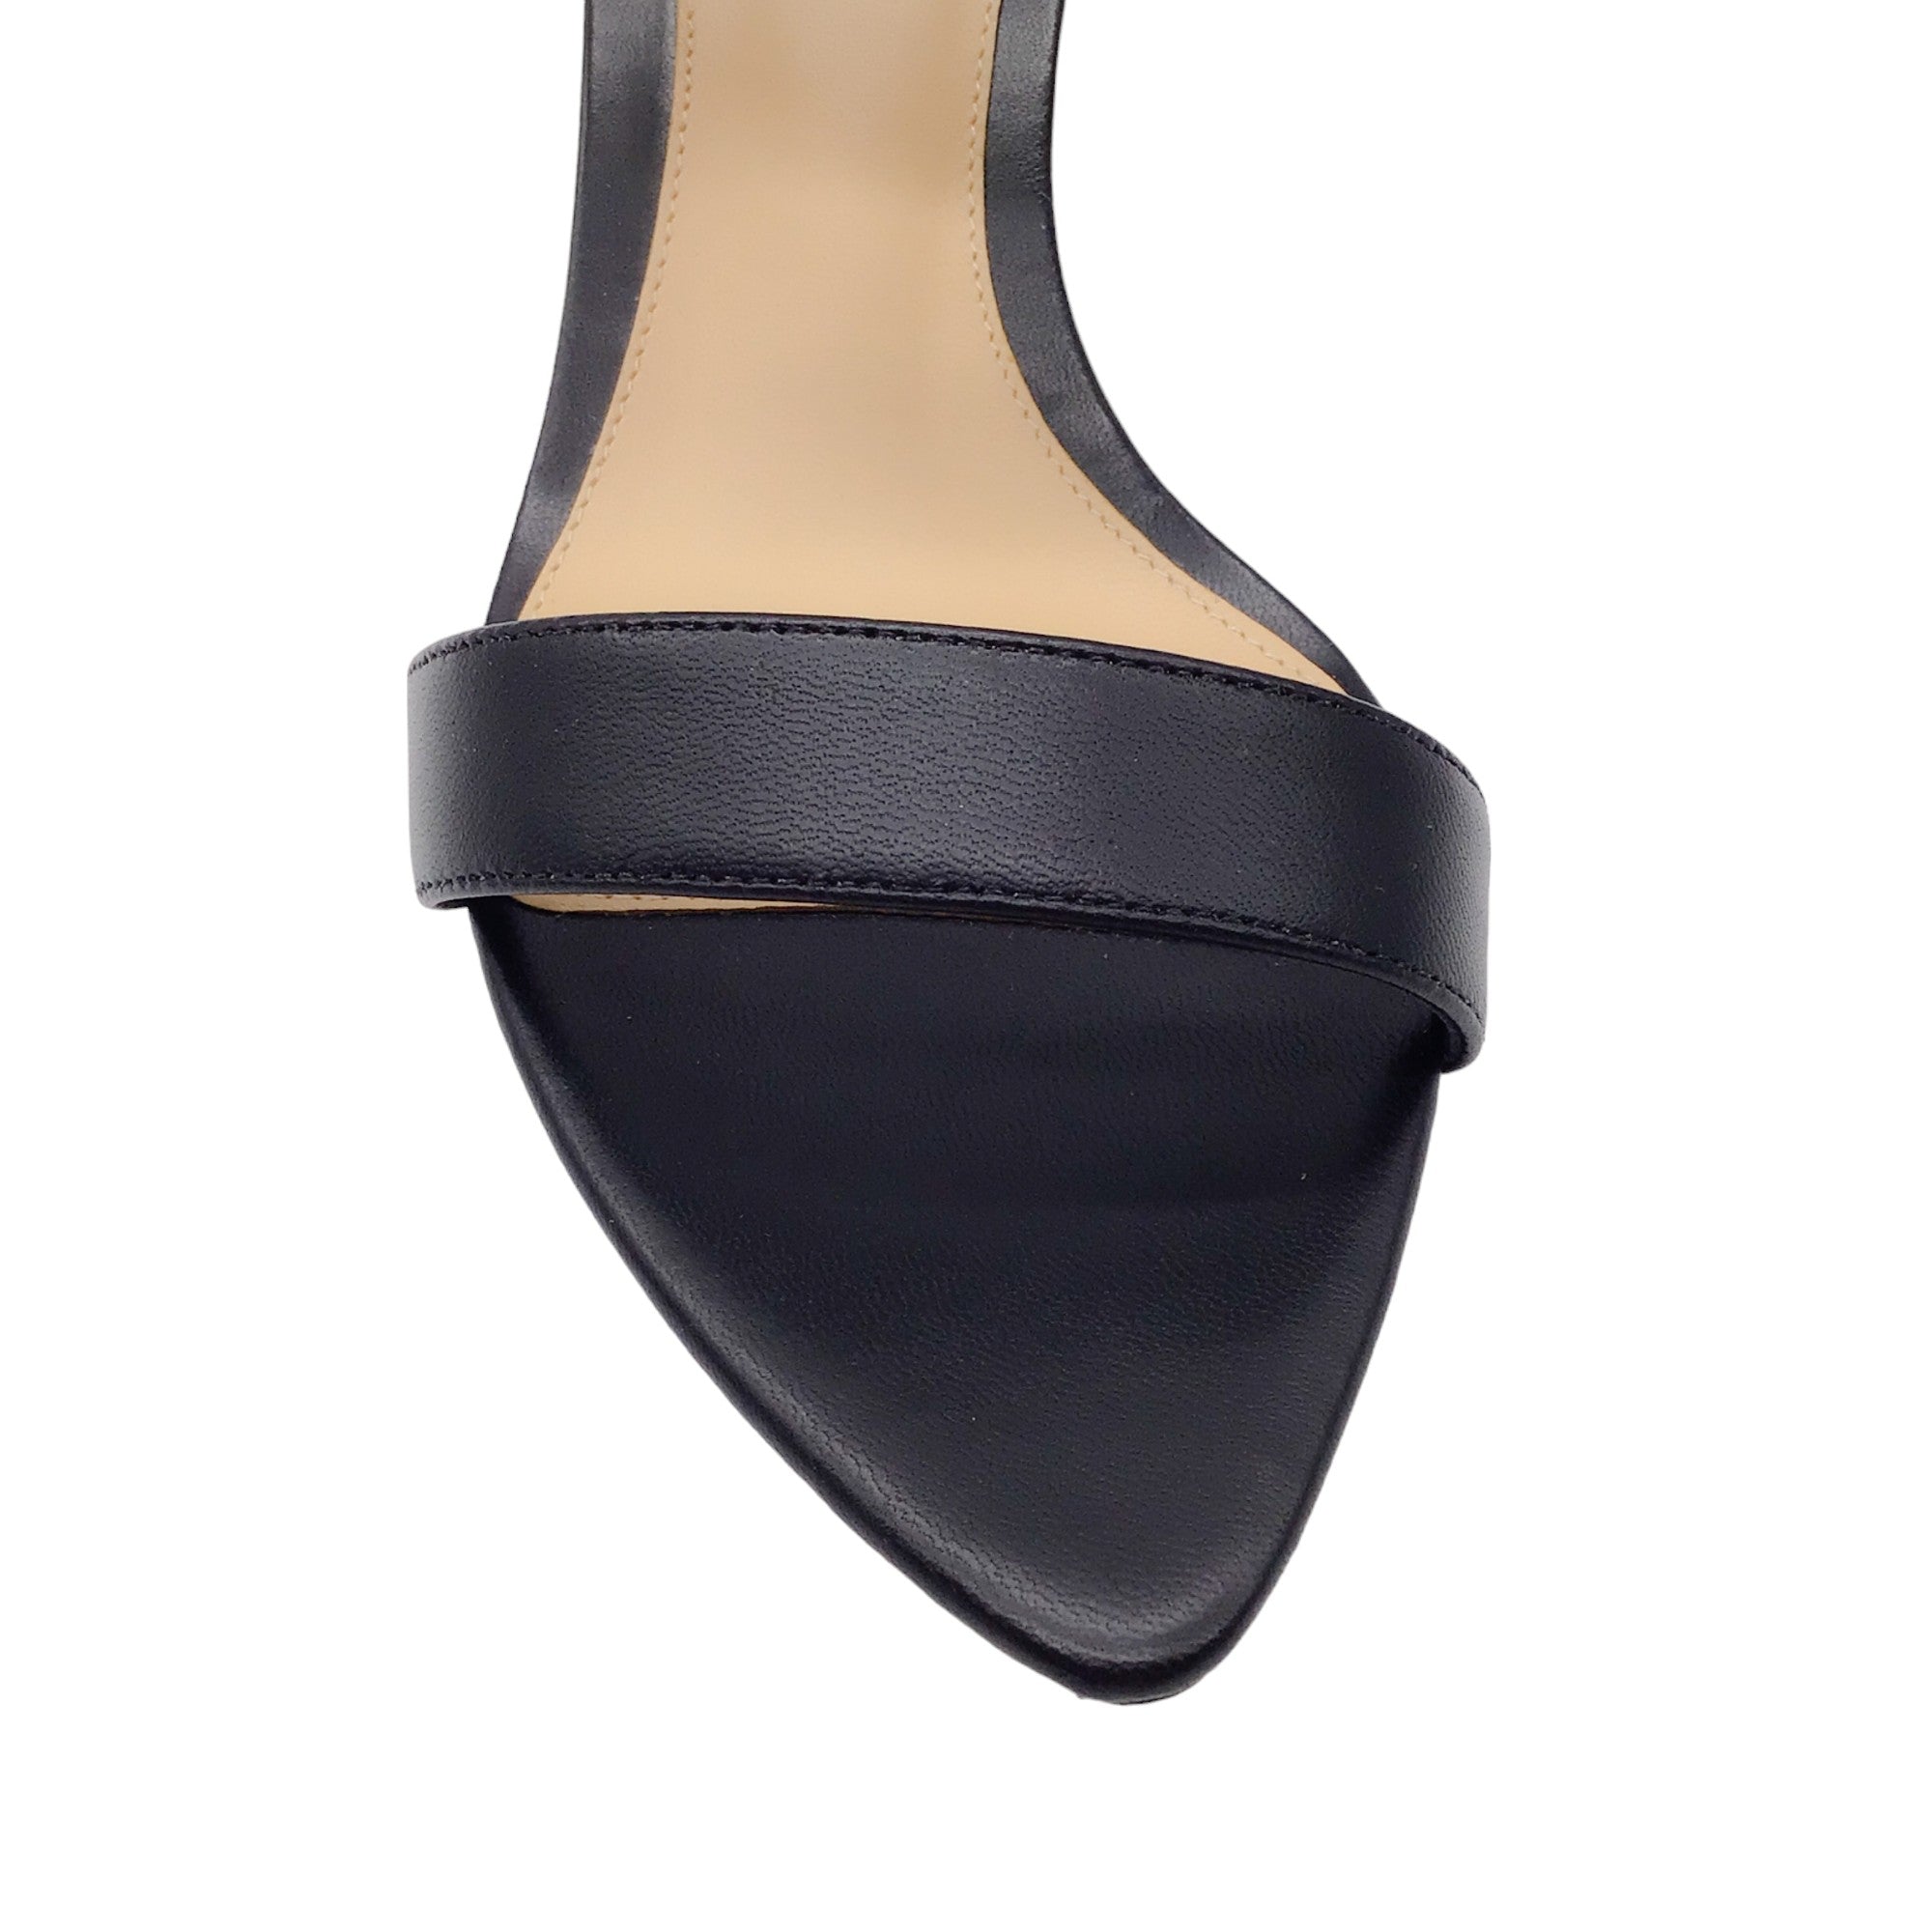 Alexandre Birman Black Double Strap Leather Sandals